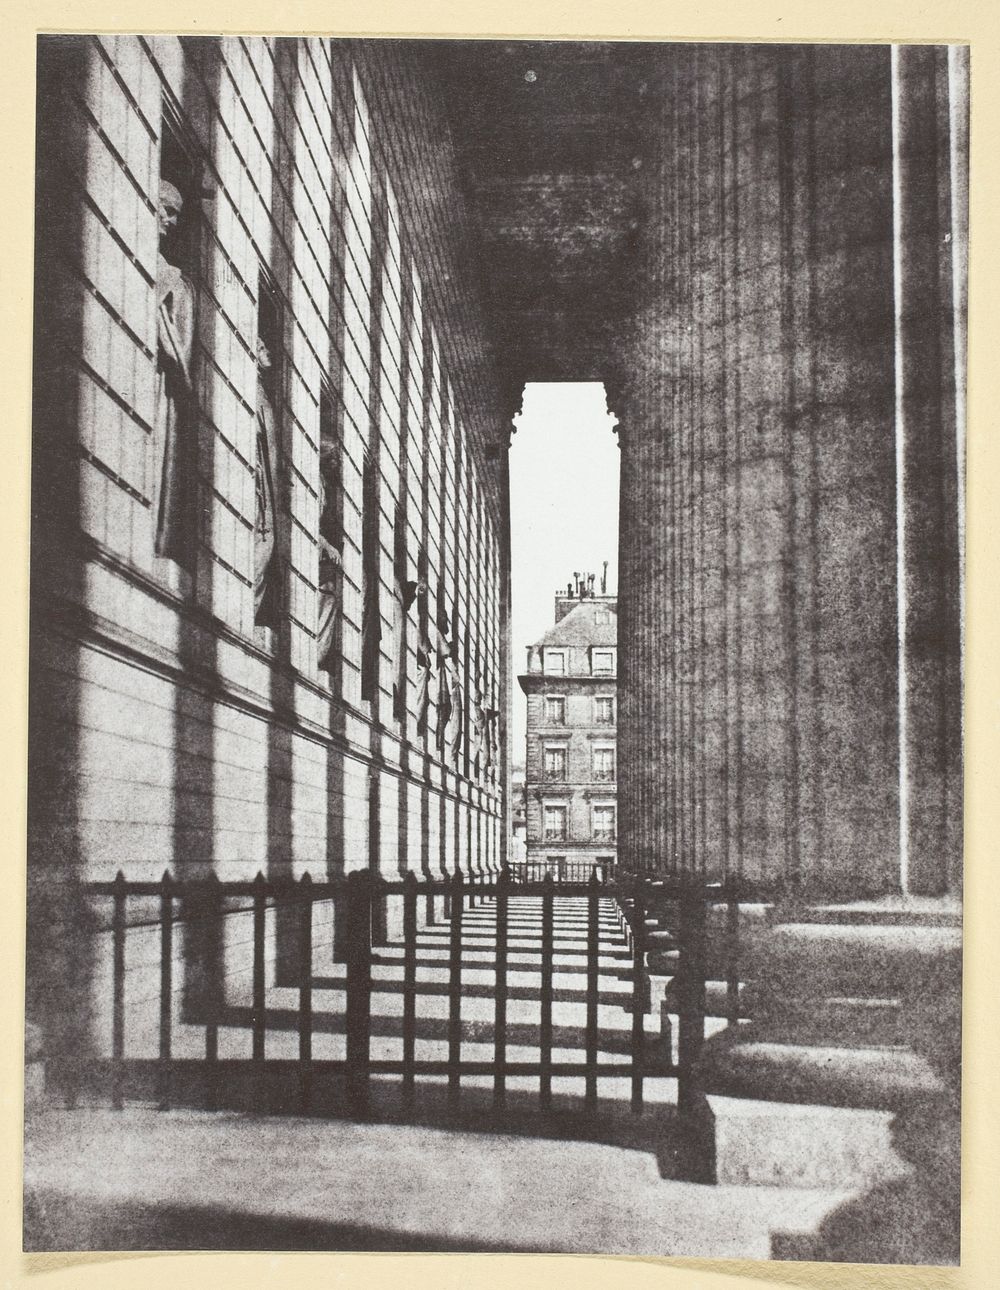 Colonnade de l'église de la Madeleine by Hippolyte Bayard